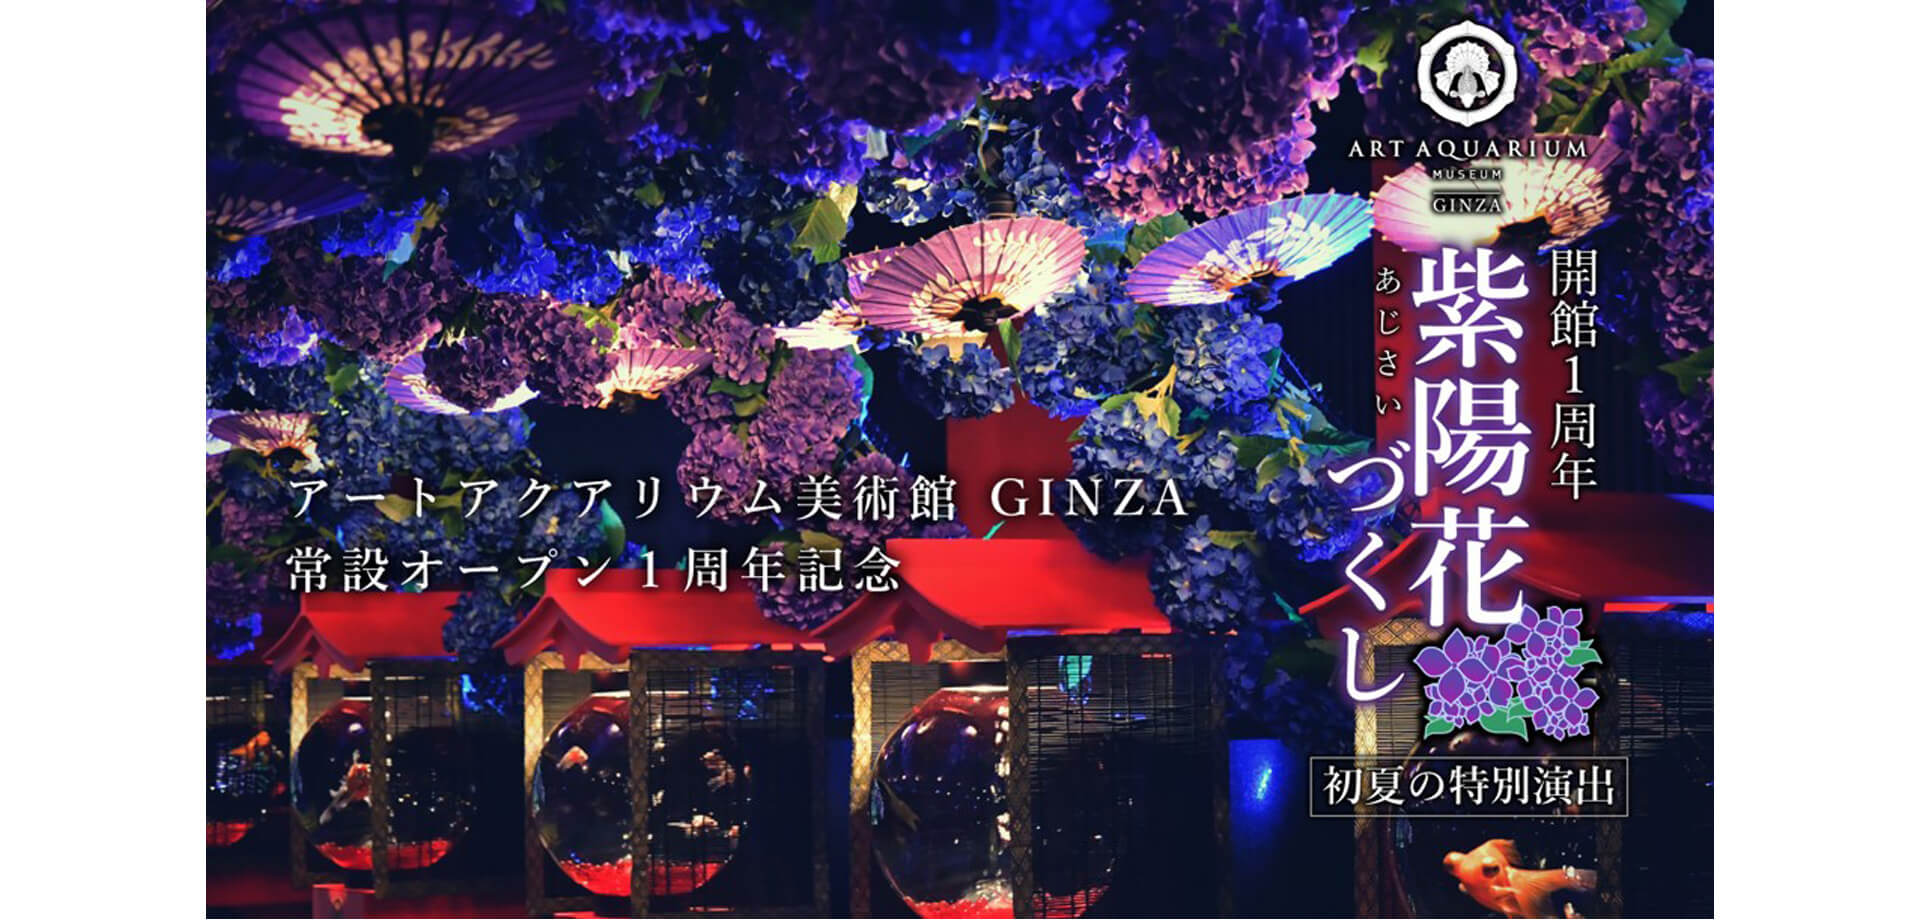 アートアクアリウム美術館 GINZA 紫陽花づくし